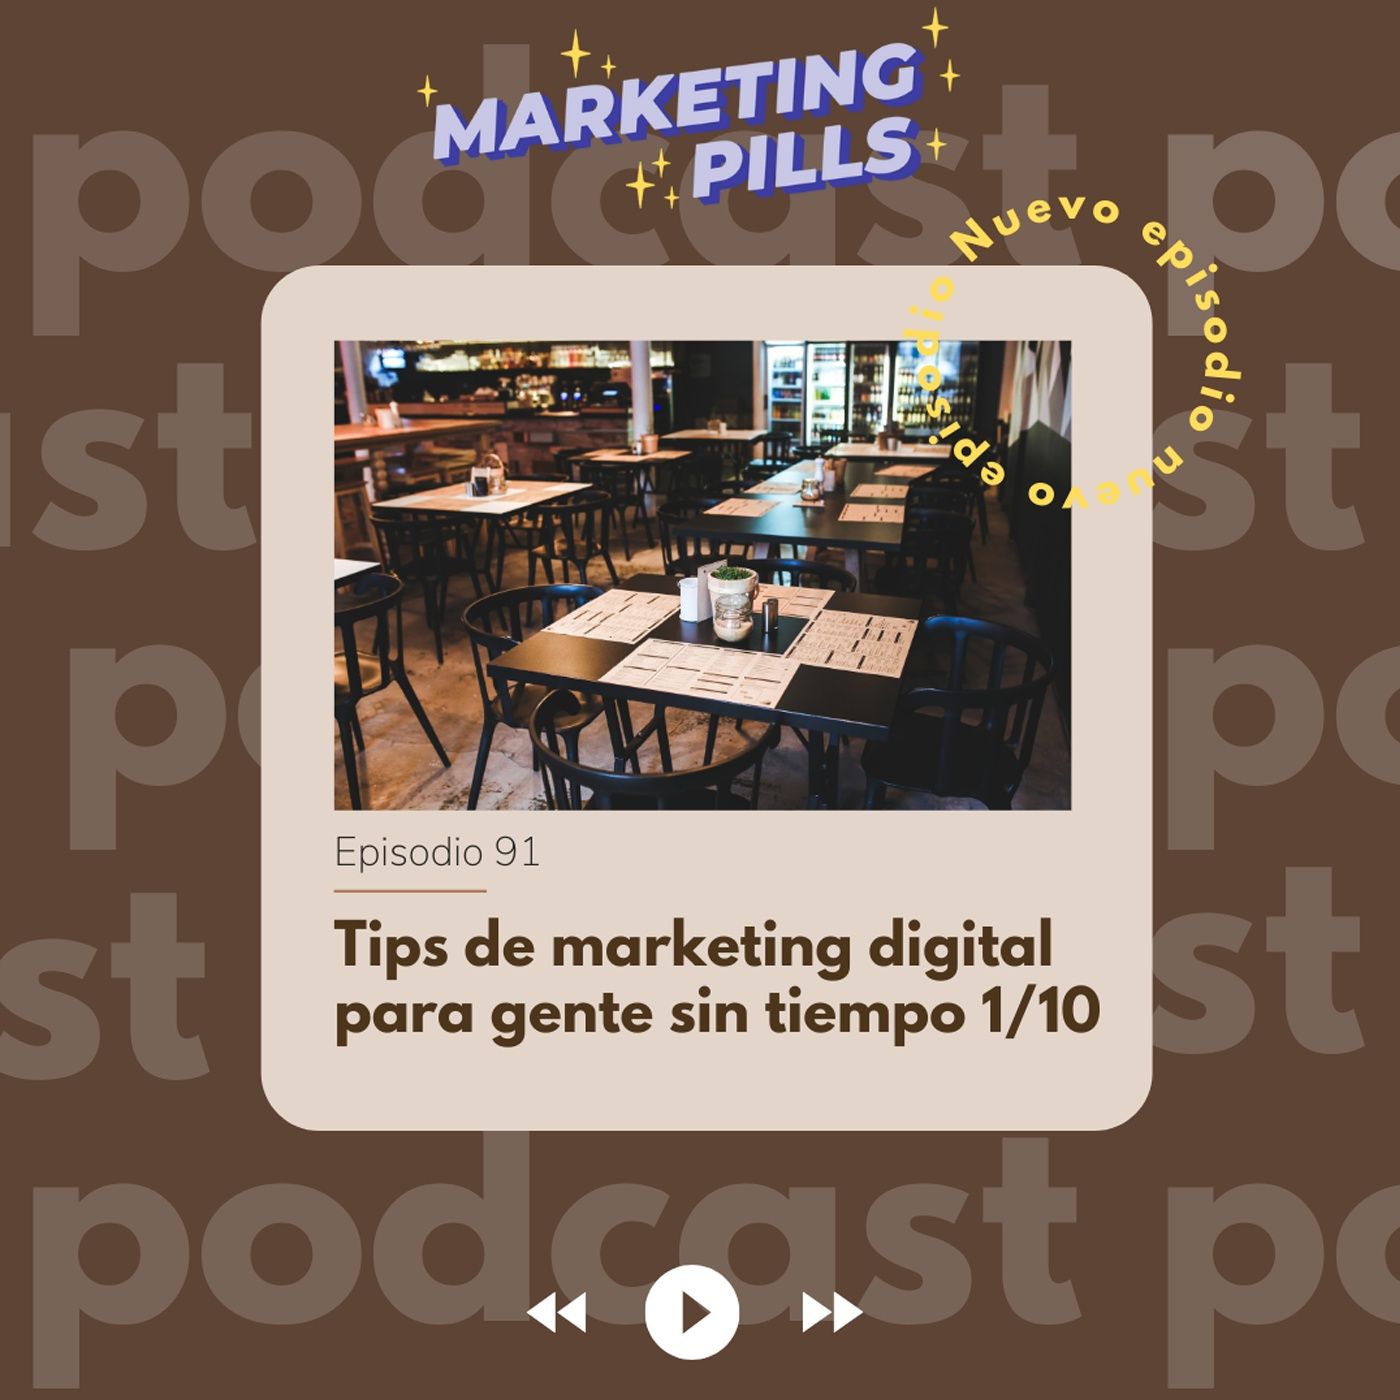 ⚡Episodio 91 - Tips de marketing digital para gente sin tiempo 1/10